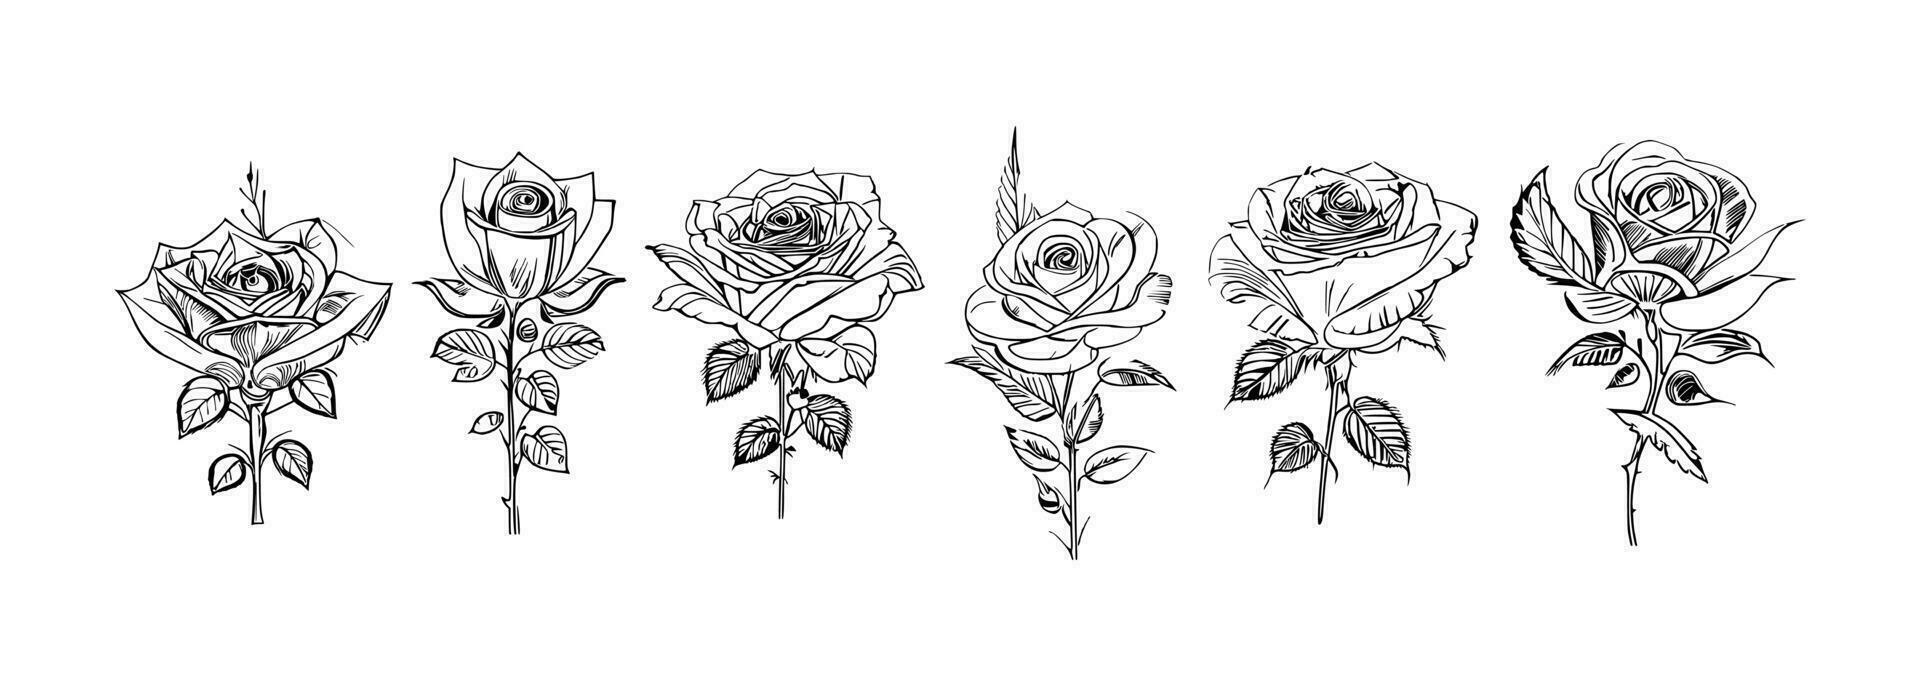 rozen reeks lijn kunst vector